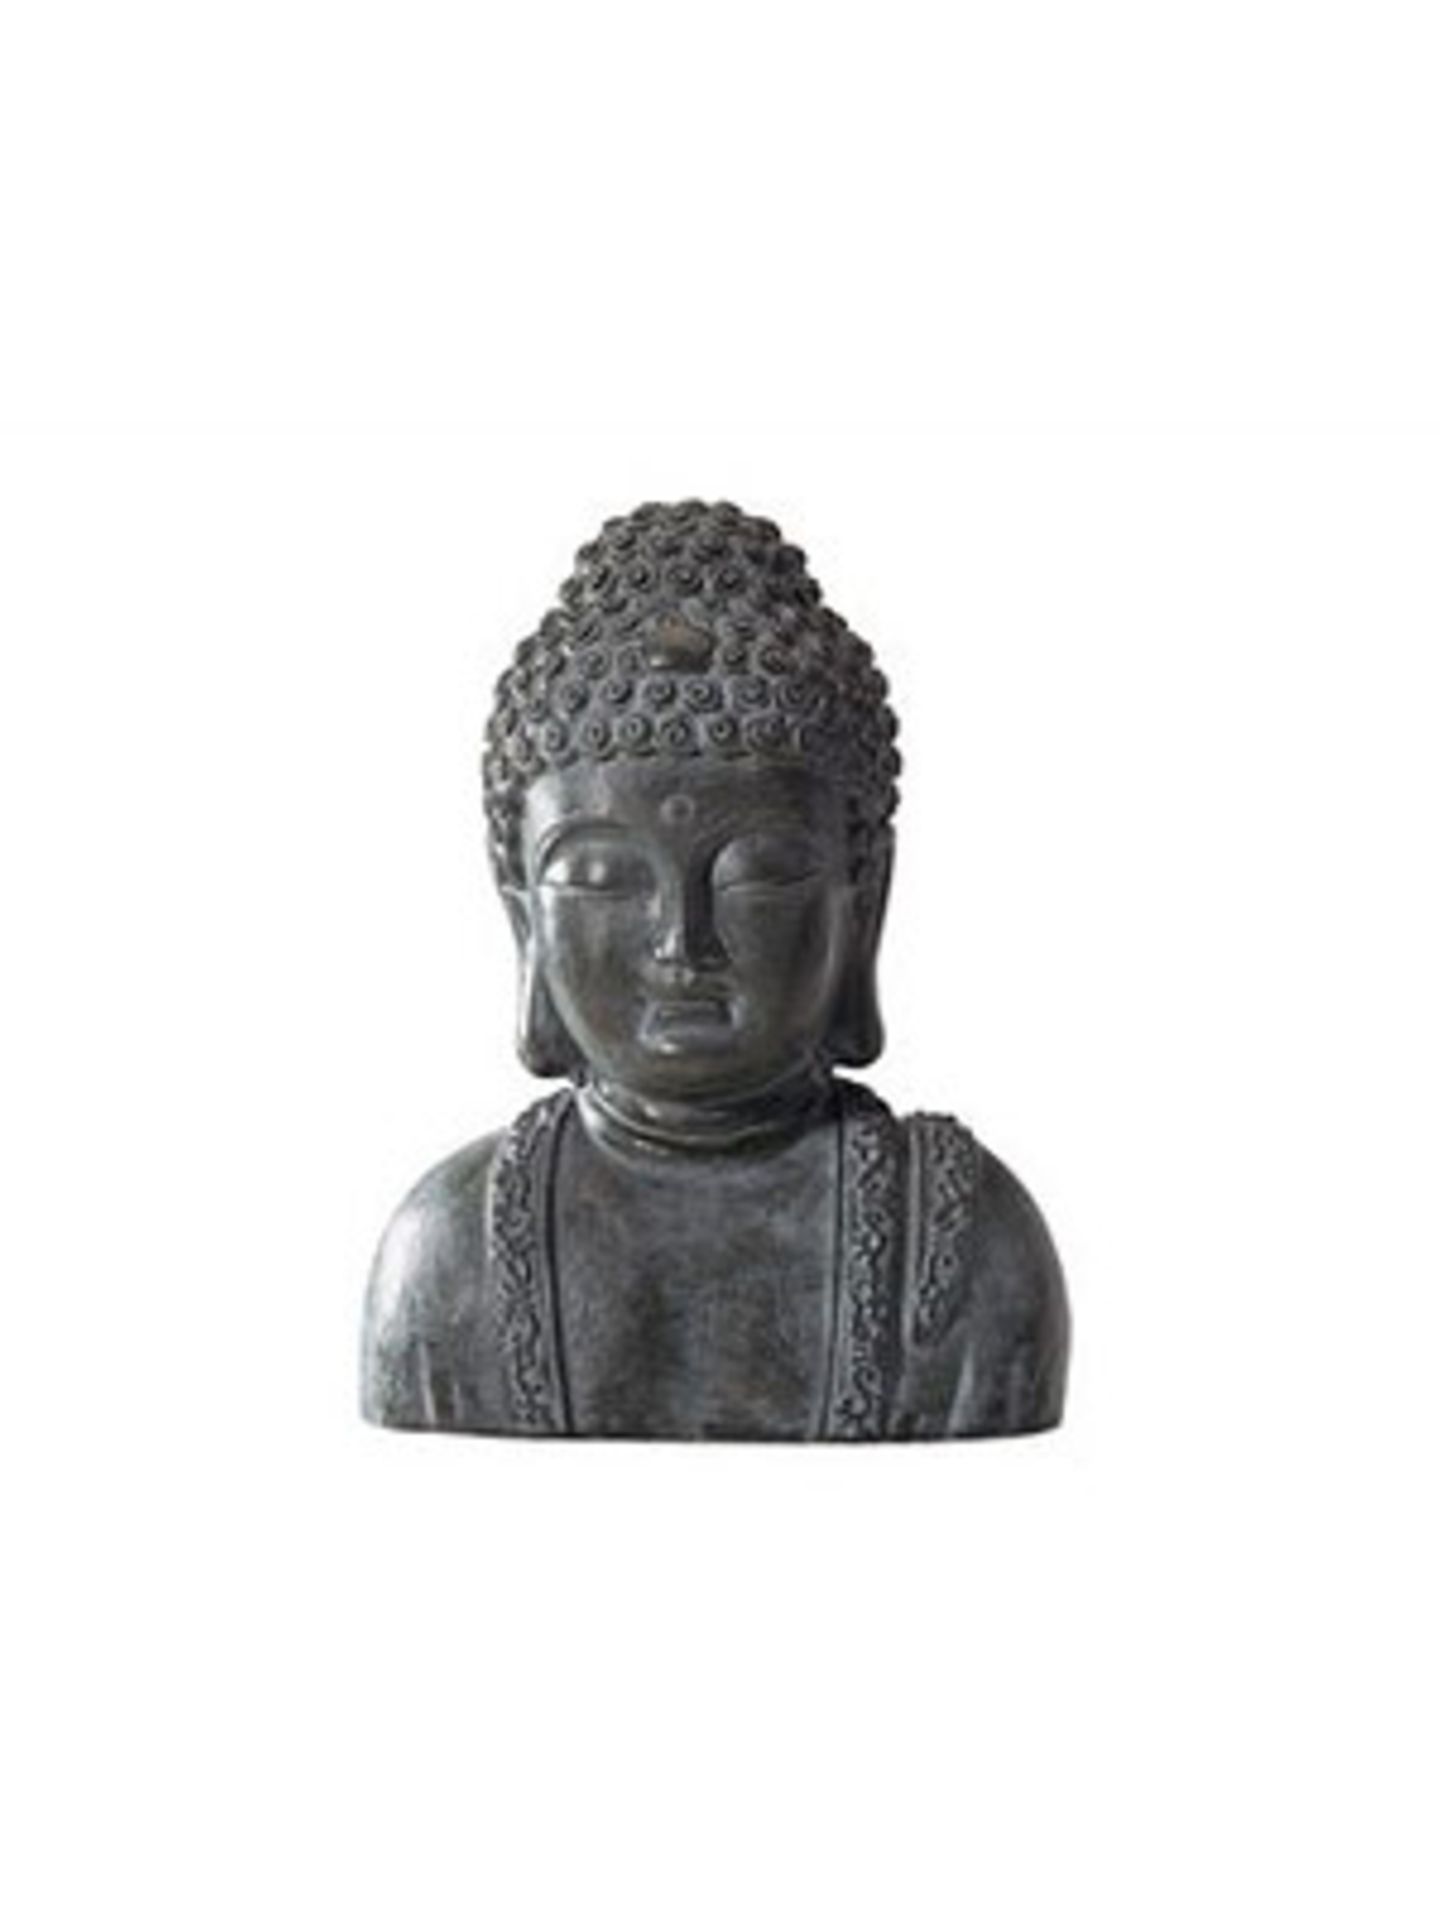 Mit dem Buddha-Kopf aus Kunststein holt ihr euch ein bißchen fernöstlicher Gelassenheit direkt ins Arbeitszimmer. Um 40 Euro bei Otto.